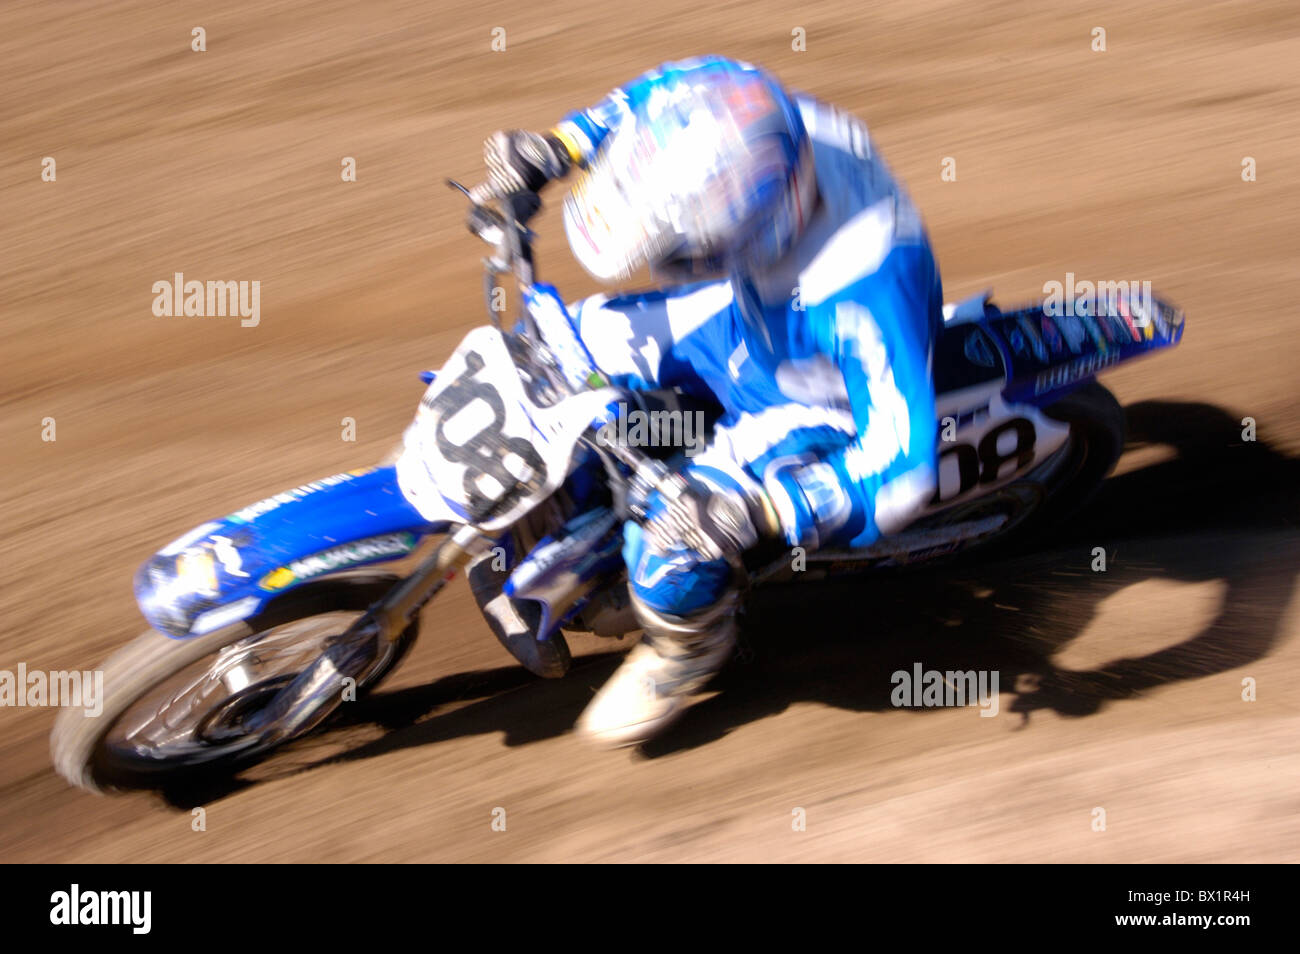 Acción del deporte del motor de moto cross moto motocicleta corriendo sport Foto de stock